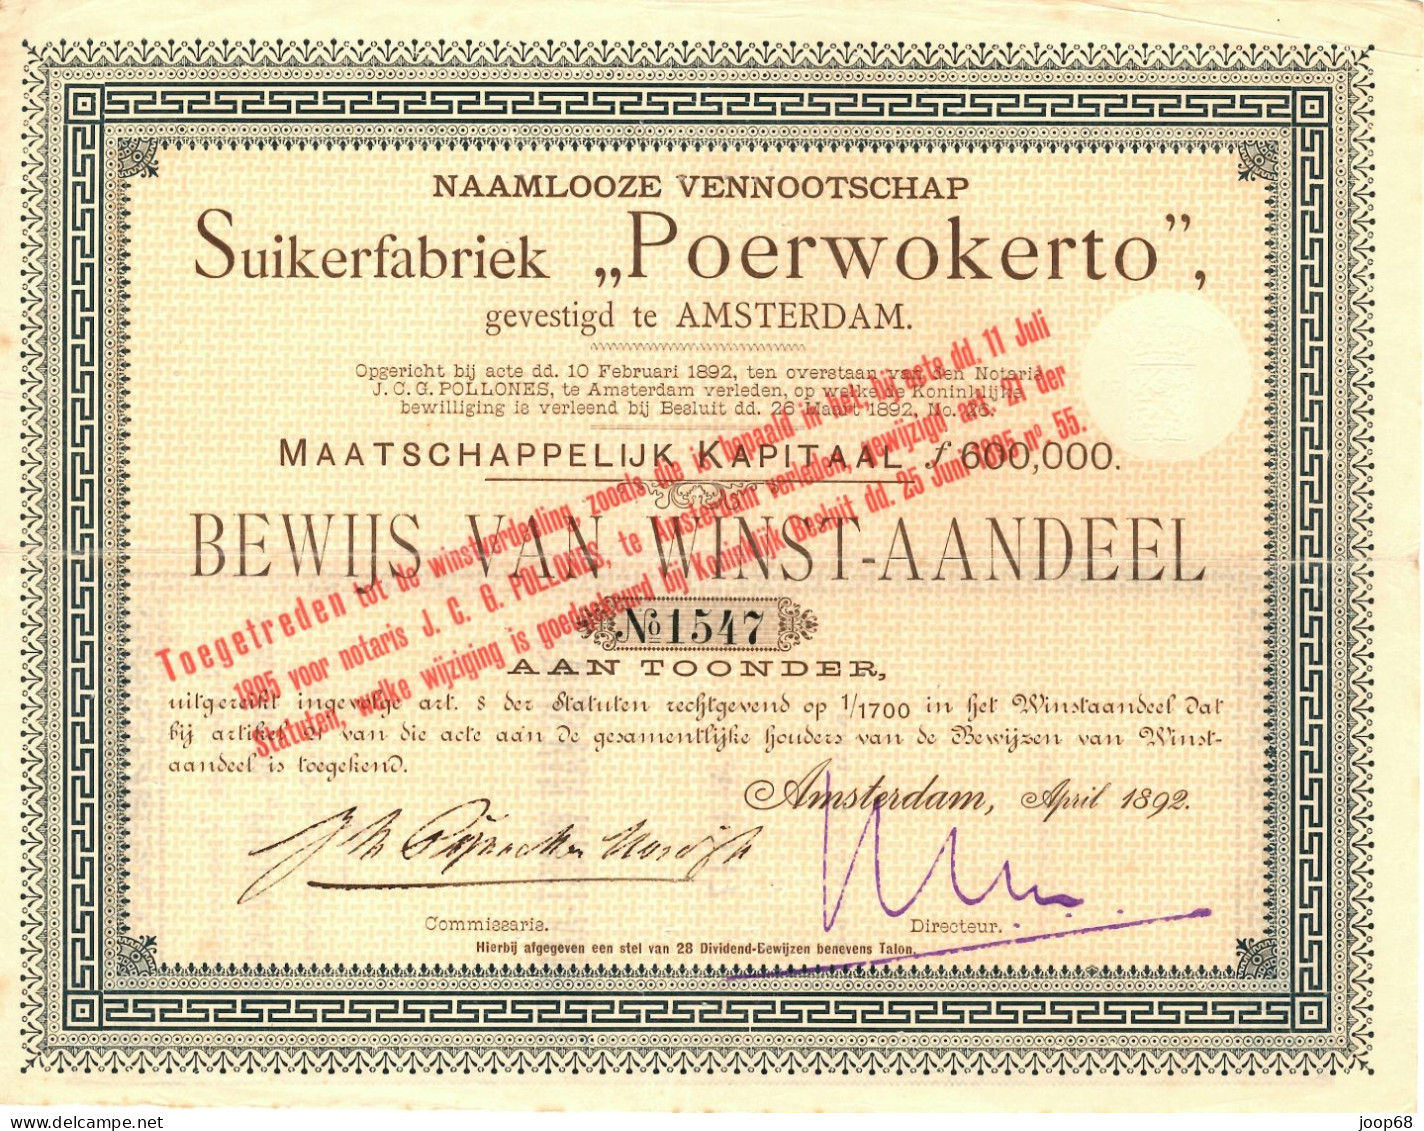 Suikerfabriek "Poerwokerto" N.V. - Winst-Aandeel - Amsterdam, April 1892 Indonesia - Landwirtschaft